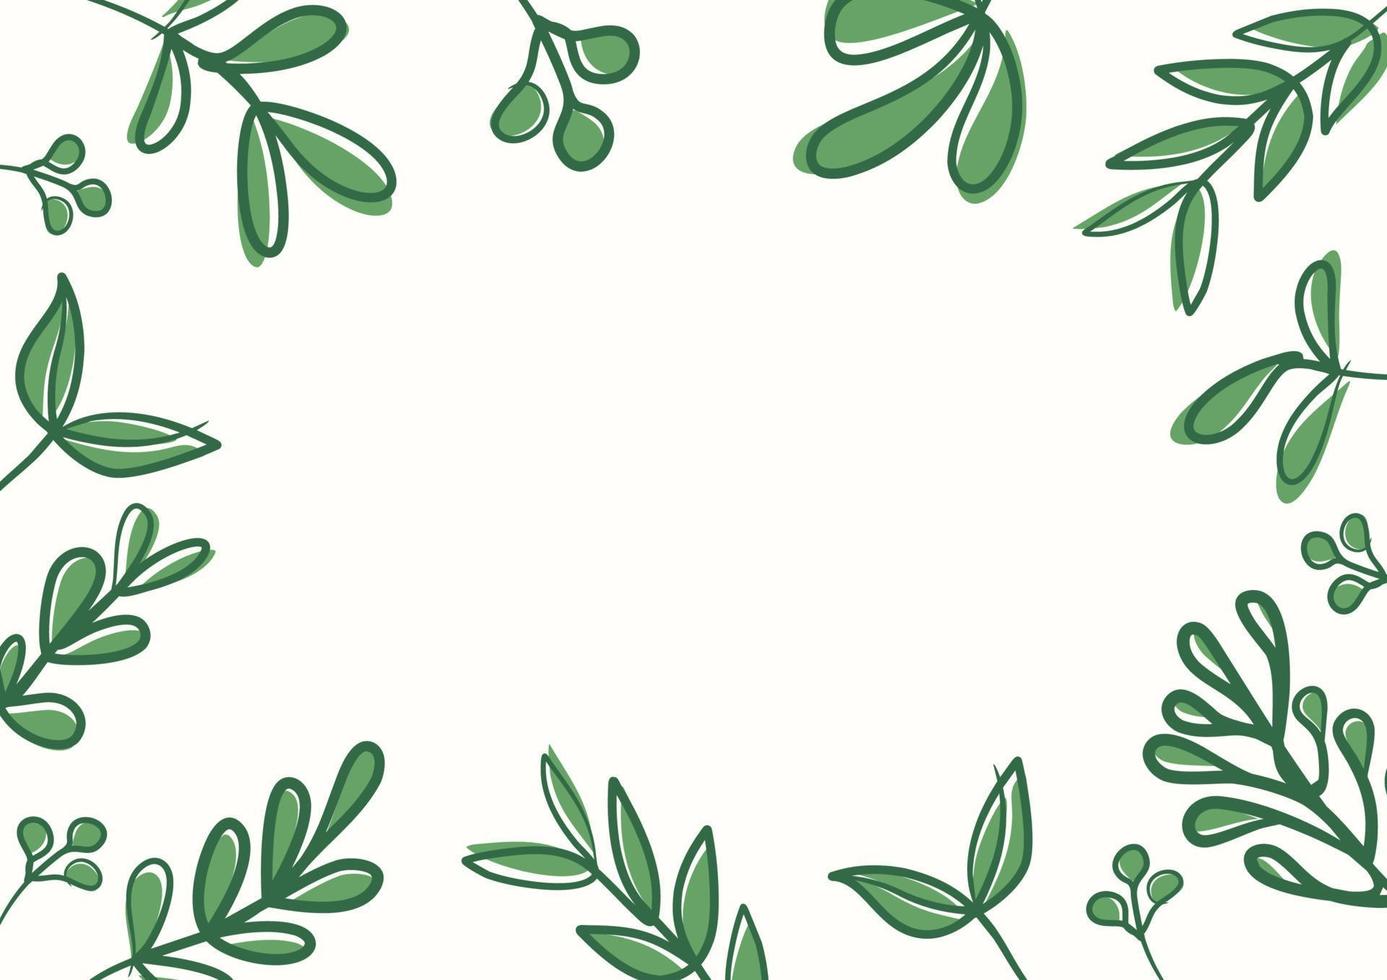 botaniska gröna blommiga löv bakgrund med kopia utrymme för text vektor